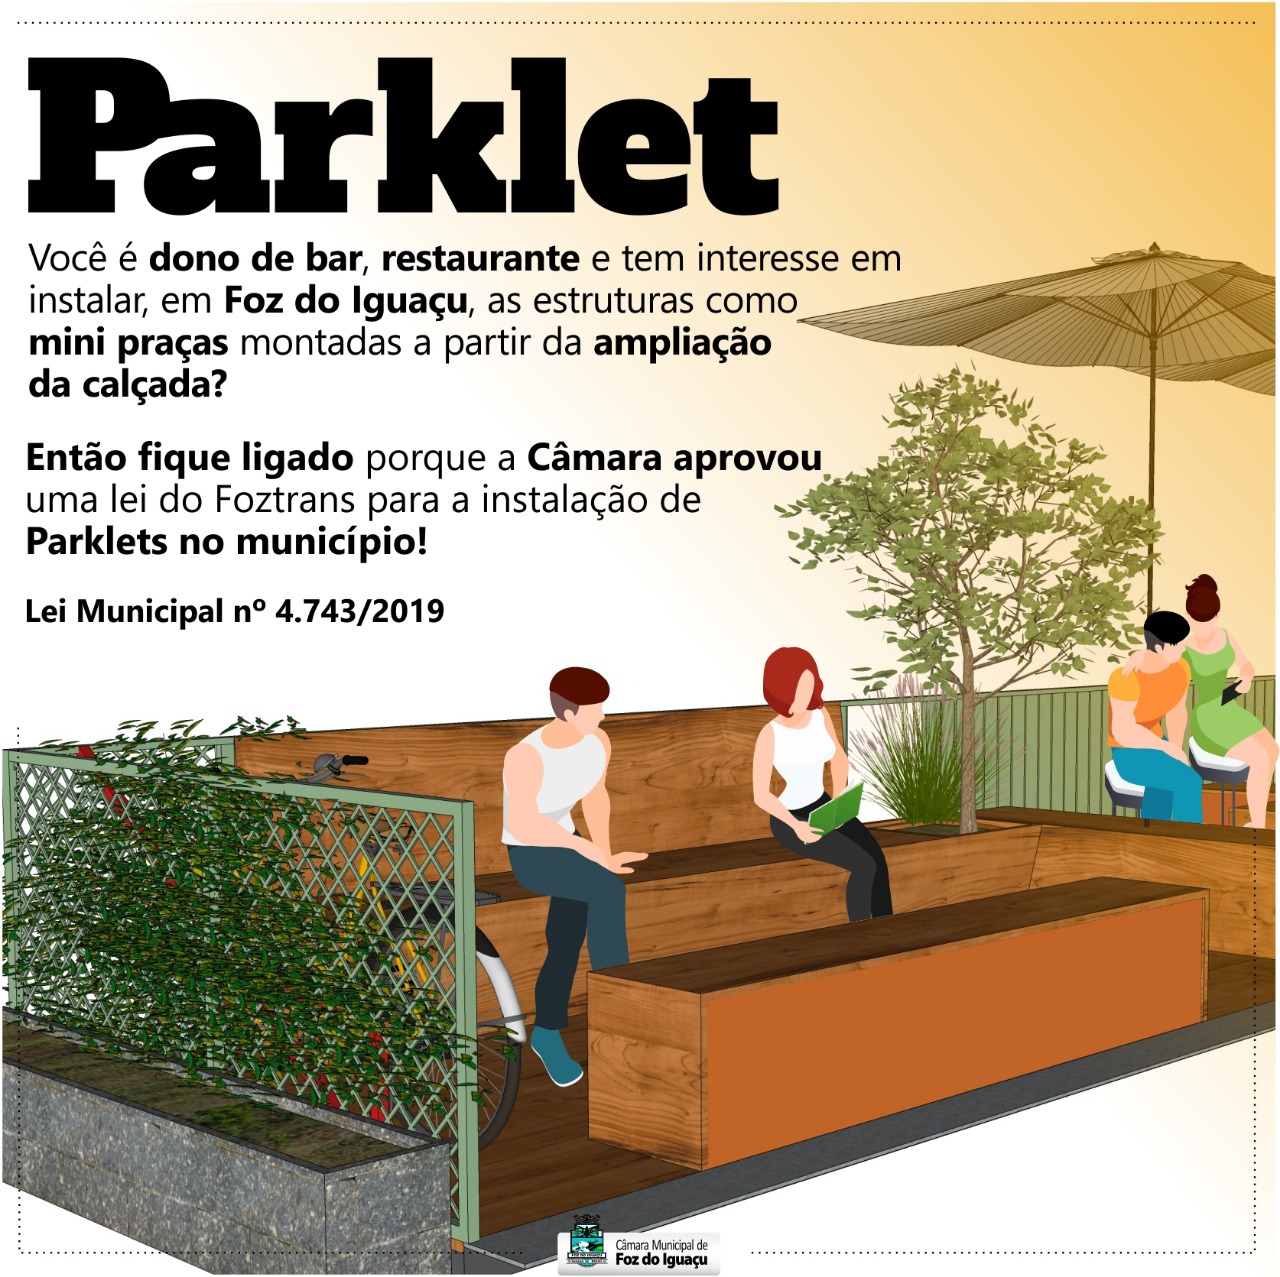 Empresas já podem instalar Parklet em Foz do Iguaçu!